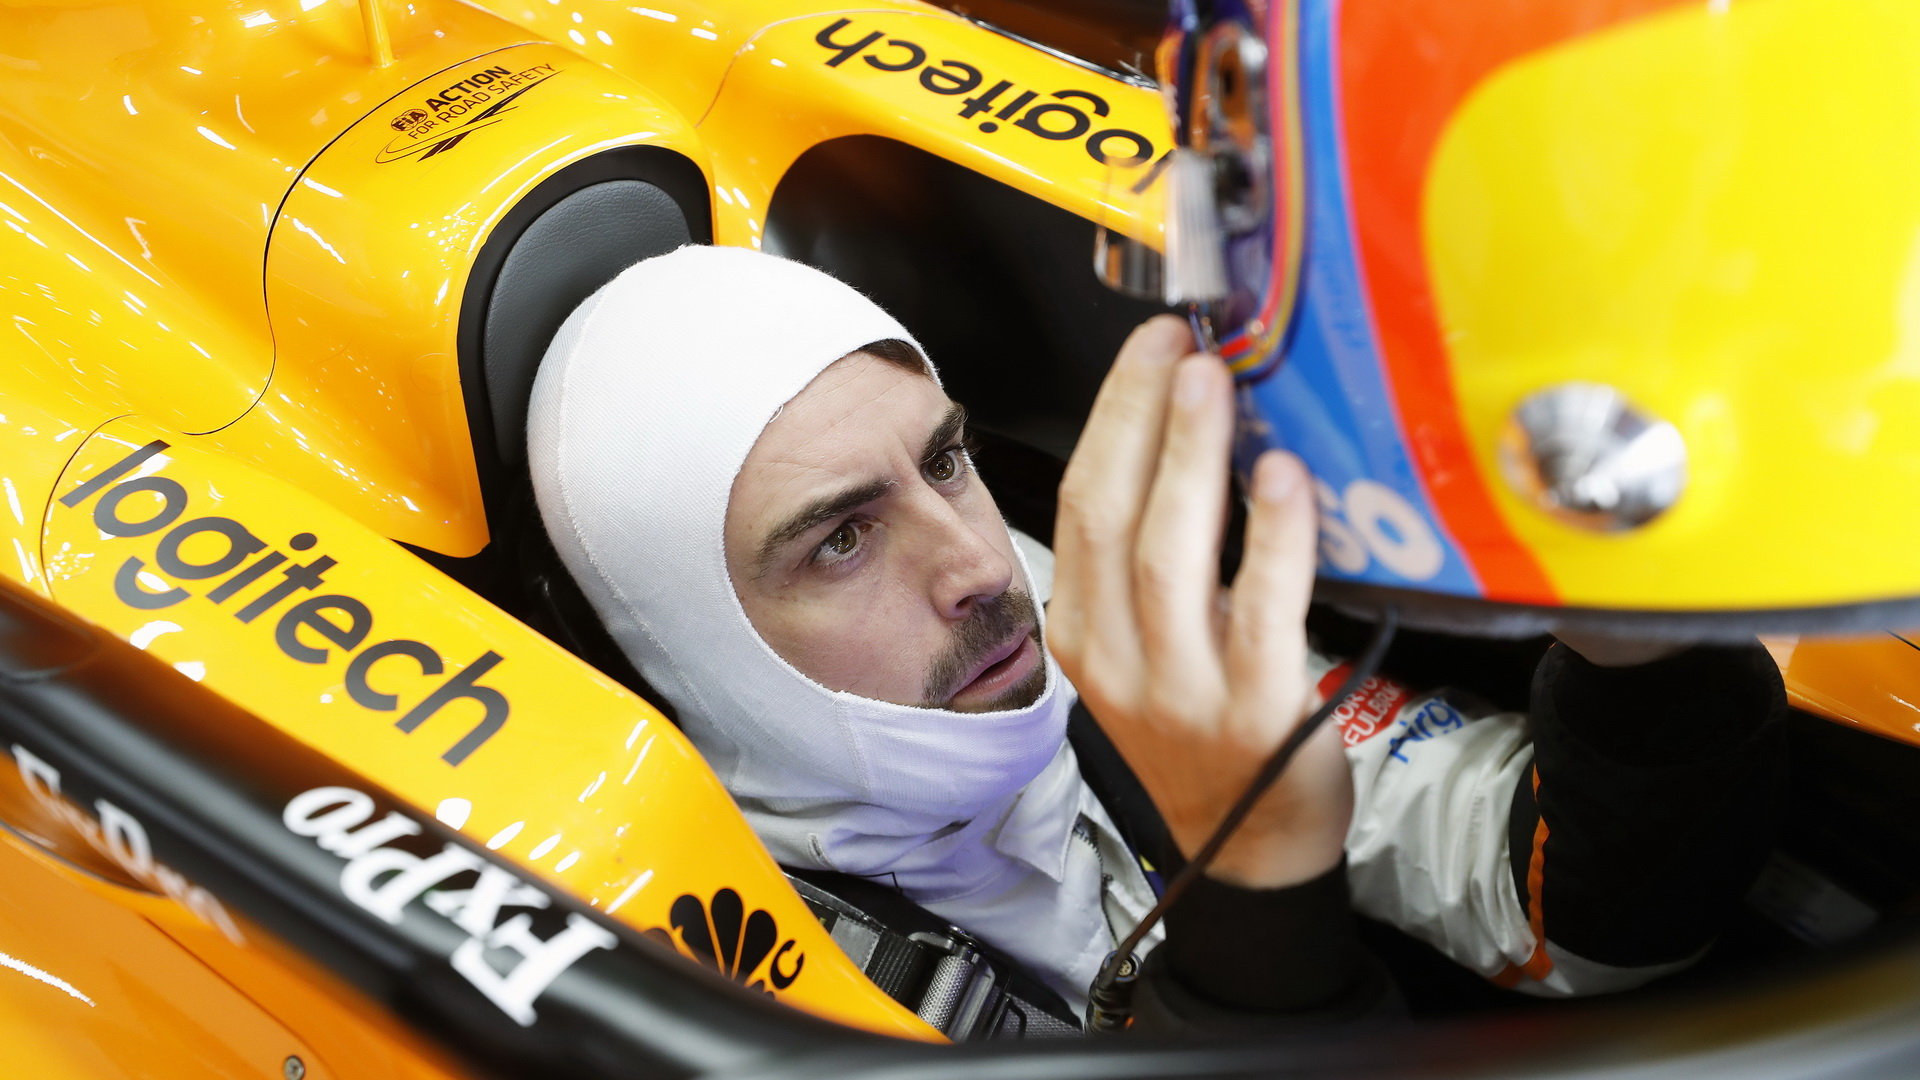 Fernando určitě snil po přestupu k McLarenu o mnohem lepších výsledcích. Proti ale byla slabá konkurenceschopnost monopostů britské stáje v posledních letech společně s nespolehlivostí pohonného ústrojí